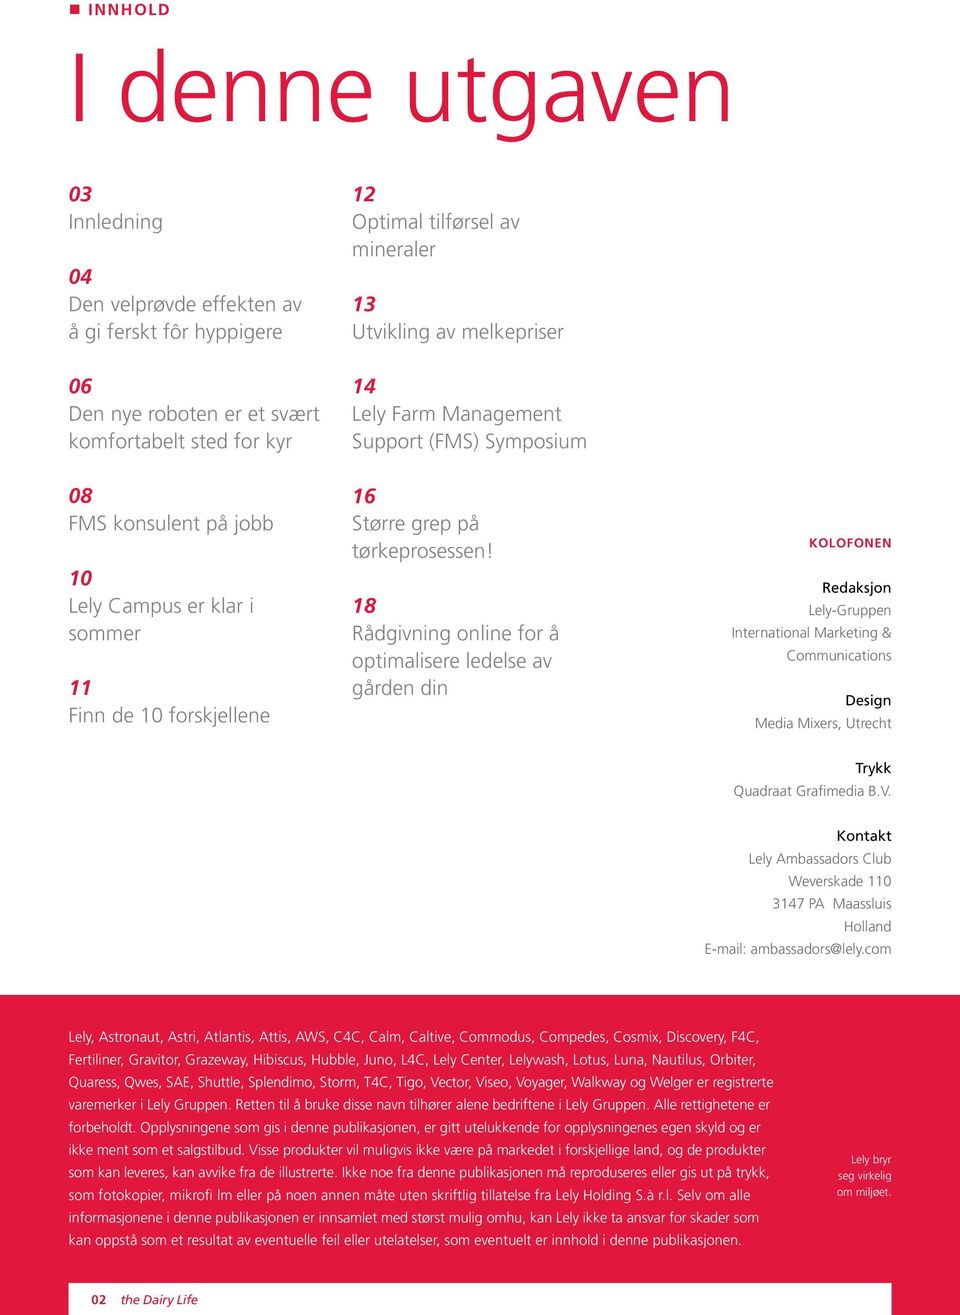 18 Rådgivning online for å optimalisere ledelse av gården din Kolofonen Redaksjon Lely-Gruppen International Marketing & Communications Design Media Mixers, Utrecht Trykk Quadraat Grafimedia B.V.